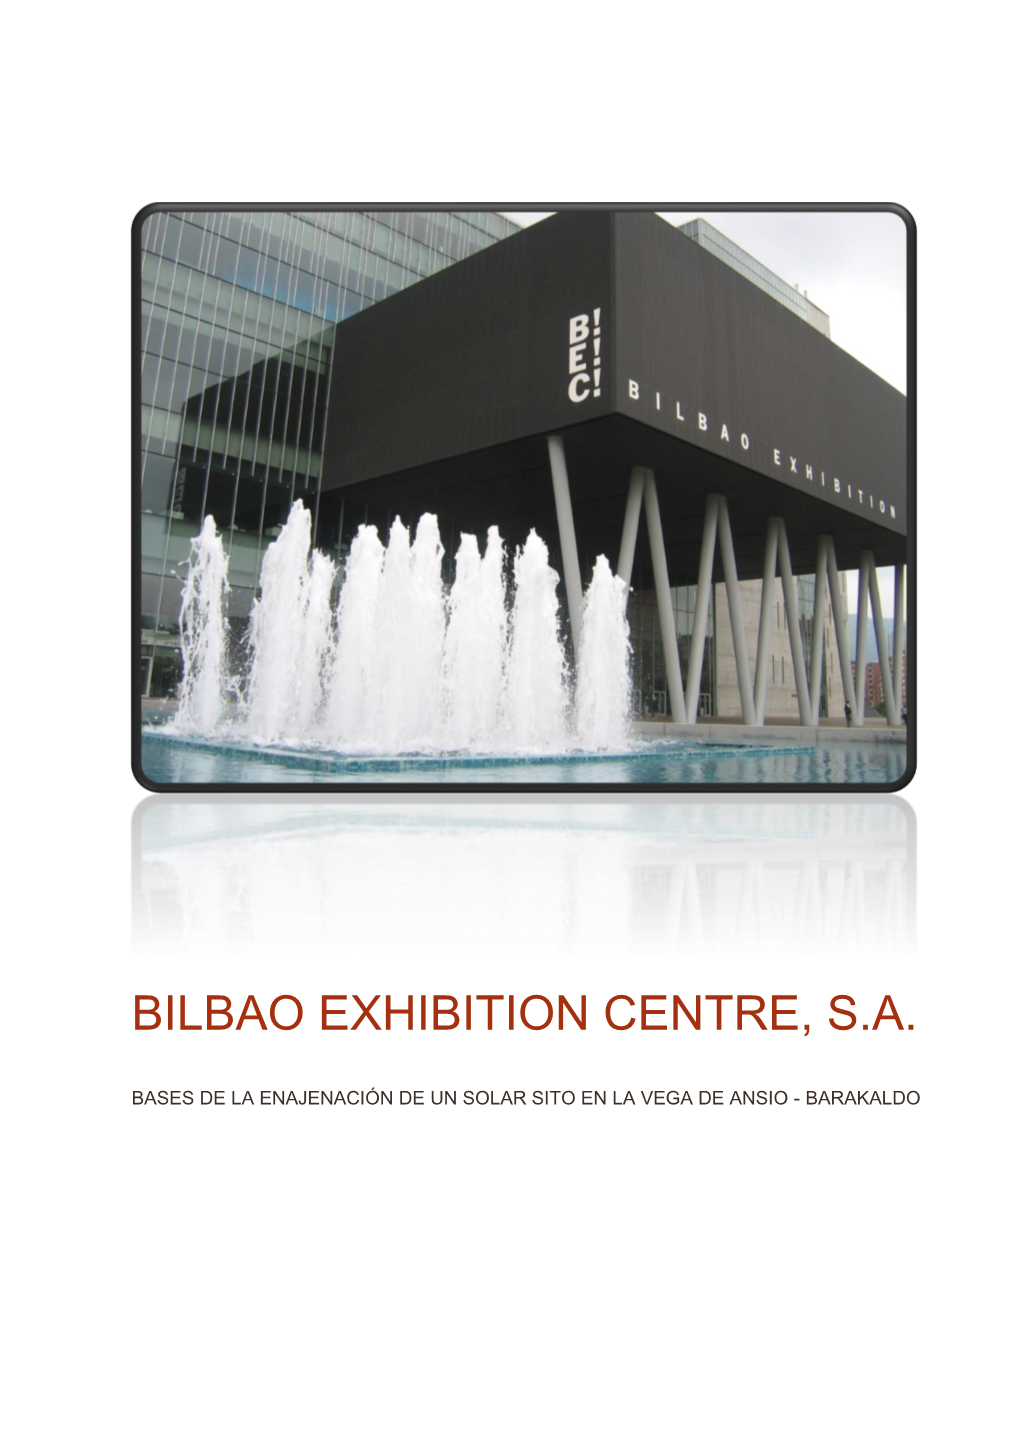 Bilbao Exhibition Centre, S.A